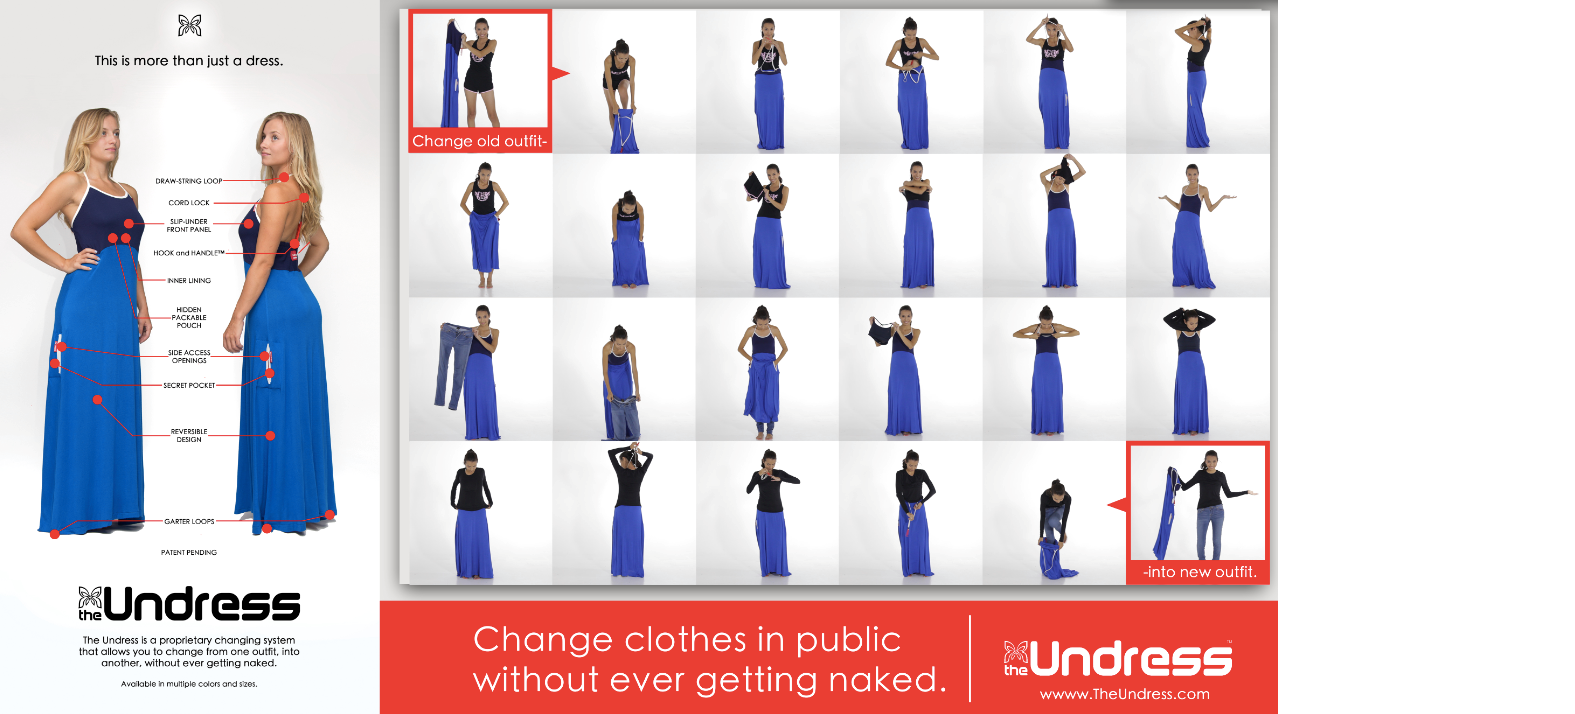 dress and undress women